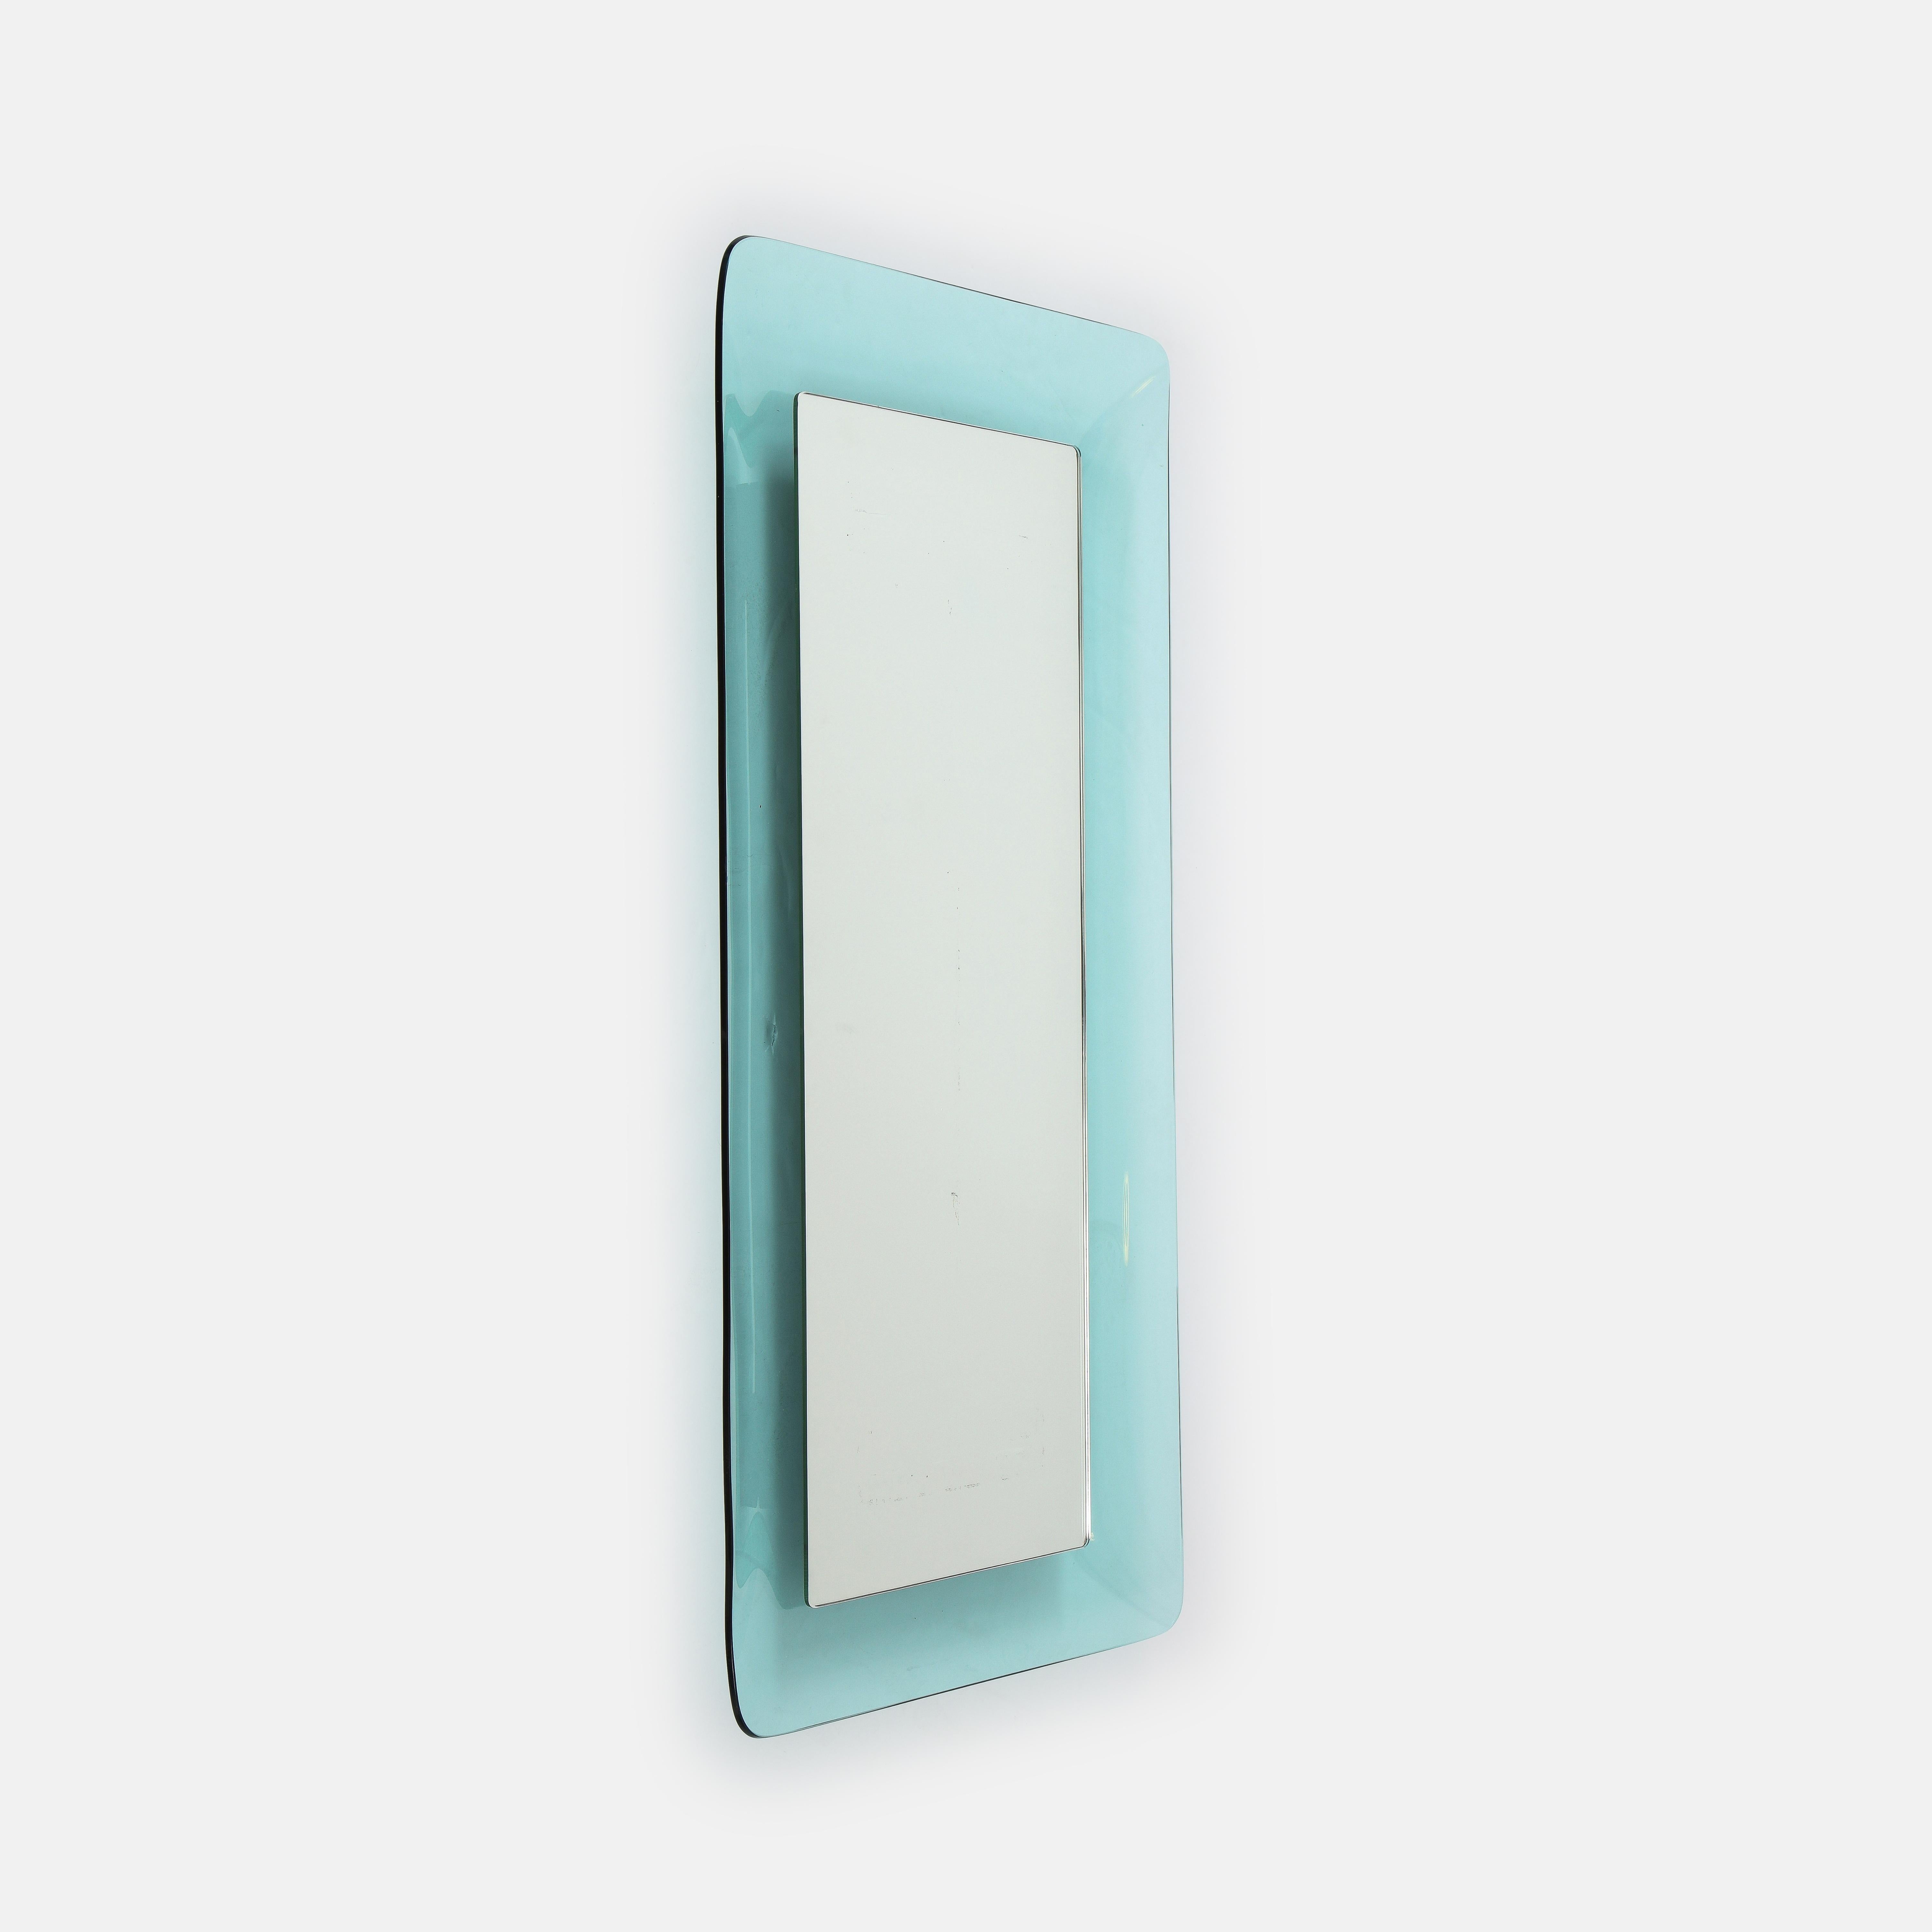 Max Ingrand für Fontana Arte großer, rechteckiger, langer Spiegel Modell 2273 aus hellblauem, gewölbtem und profiliertem Kristallglas, umrahmt von verspiegeltem Glas, Italien, um 1956. Dieser elegante Spiegel mit seinen subtilen Kurven und seiner